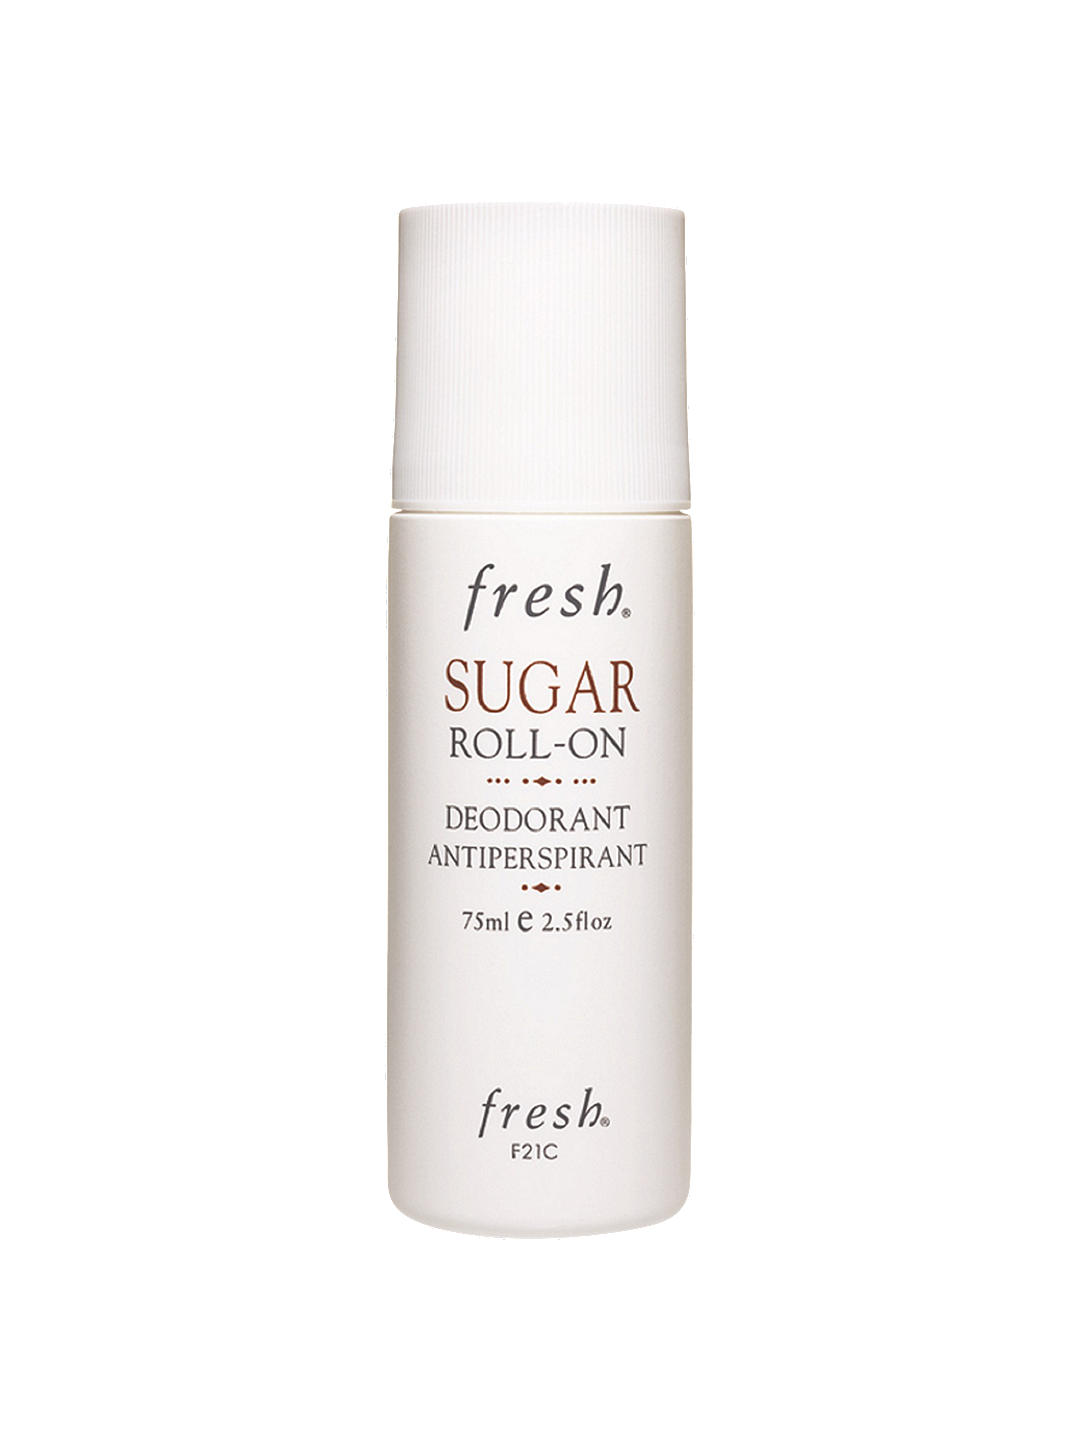 Fresh Sugar Roll-On Deodorant Antiperspirant, 75ml 1